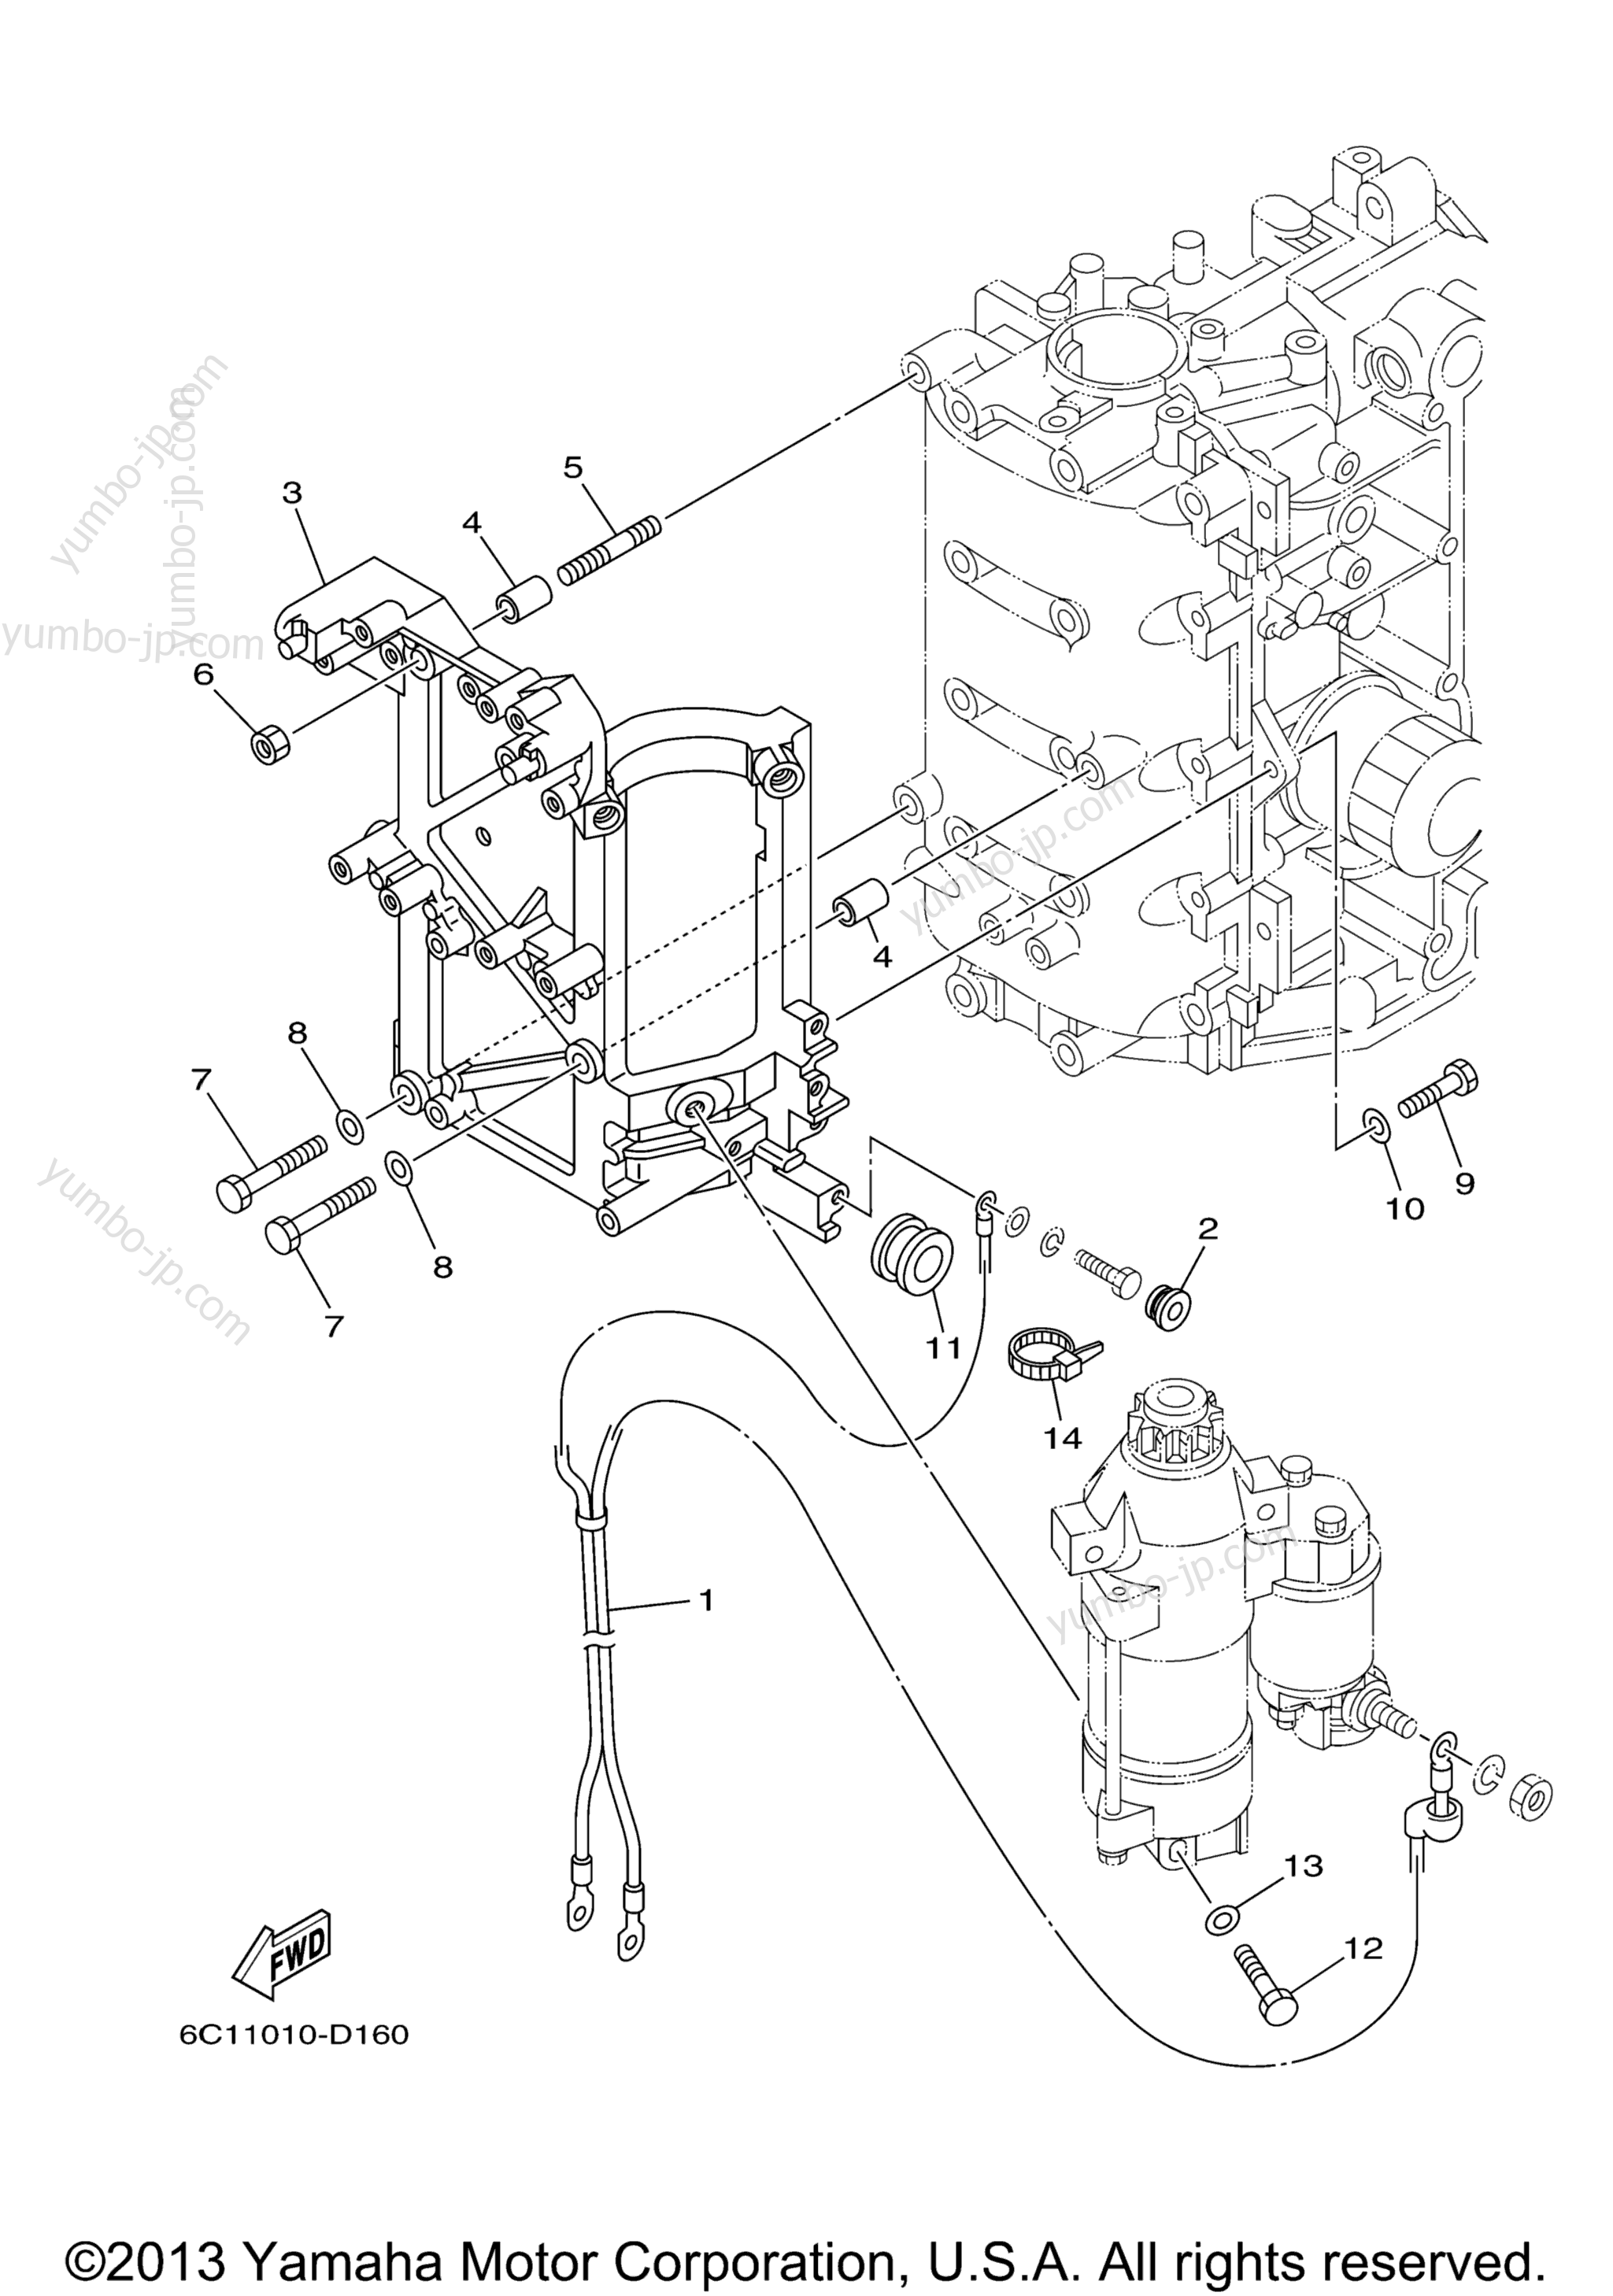 Electrical 4 для лодочных моторов YAMAHA F60TJR_041 (0411) 2006 г.